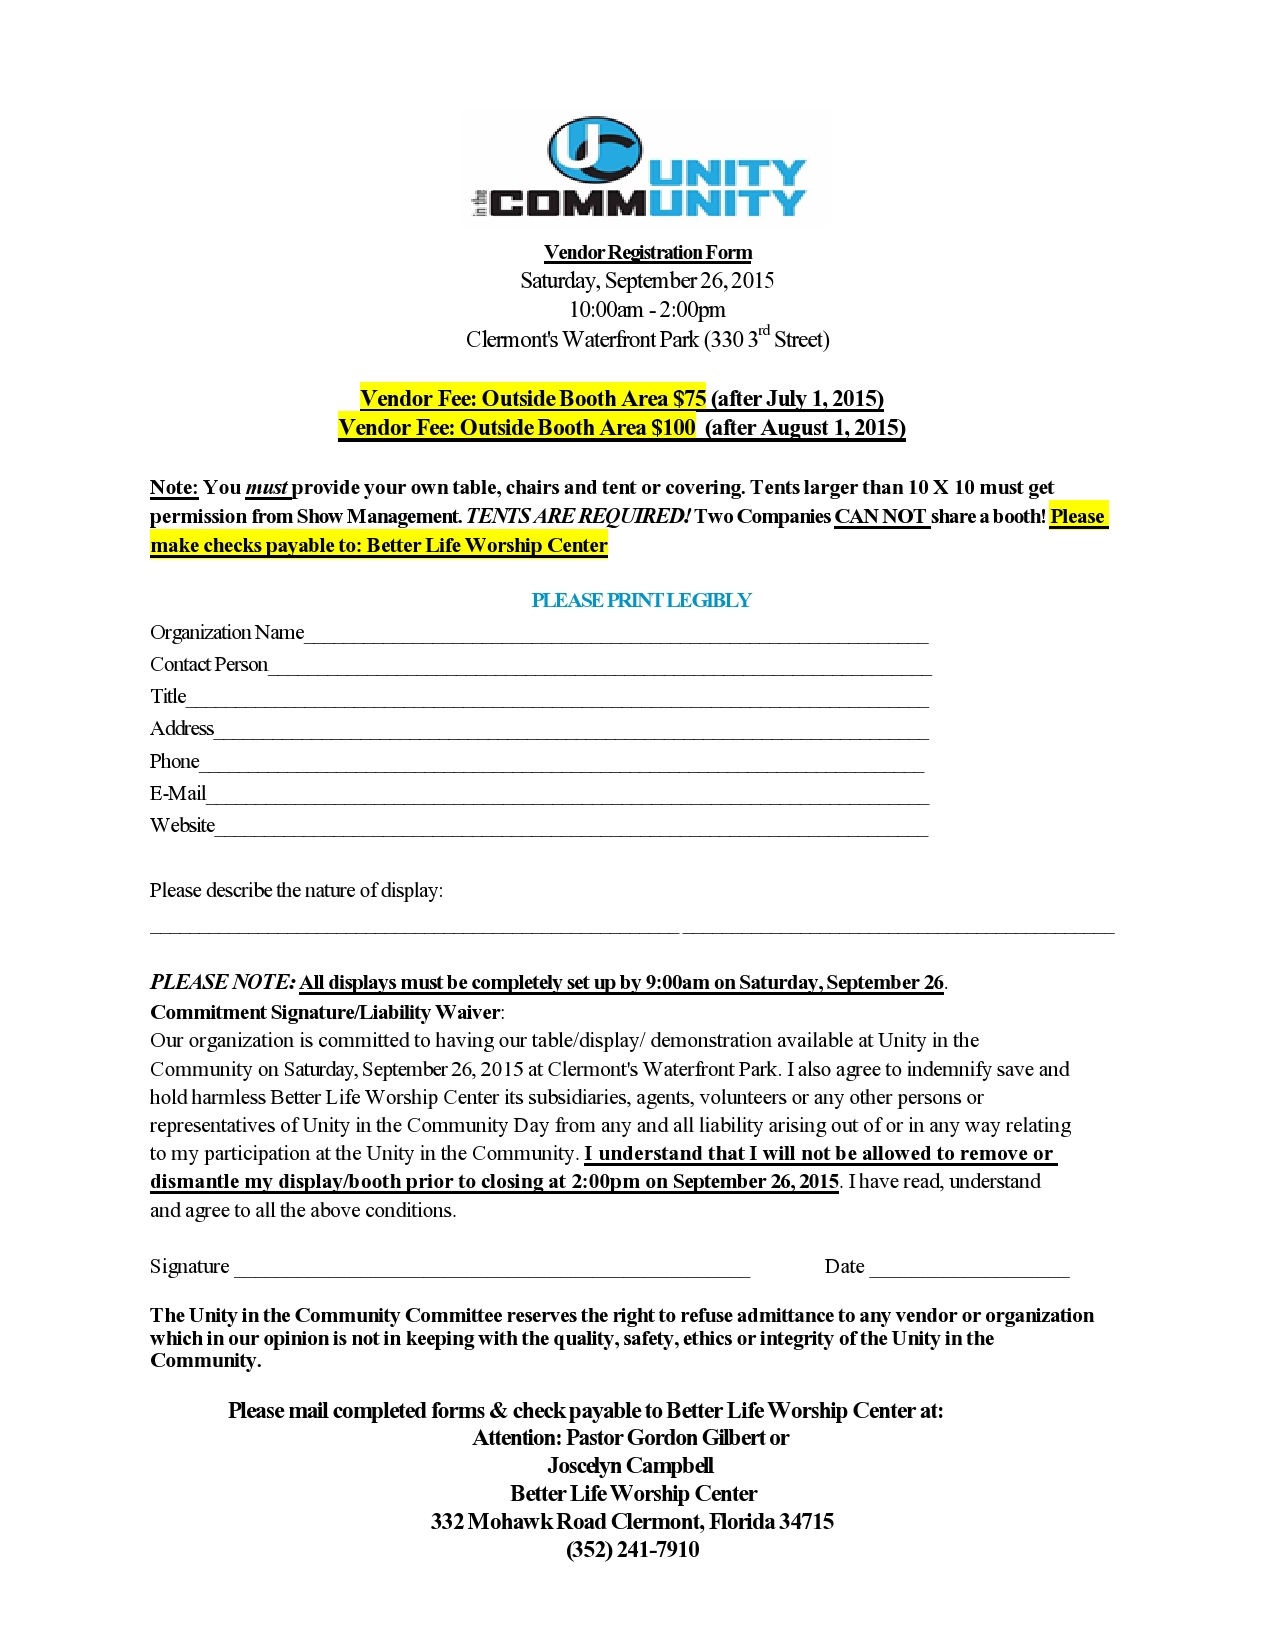 FOR PDF Regular Vendor Form-Unity-2015-$75 or $100-page0001